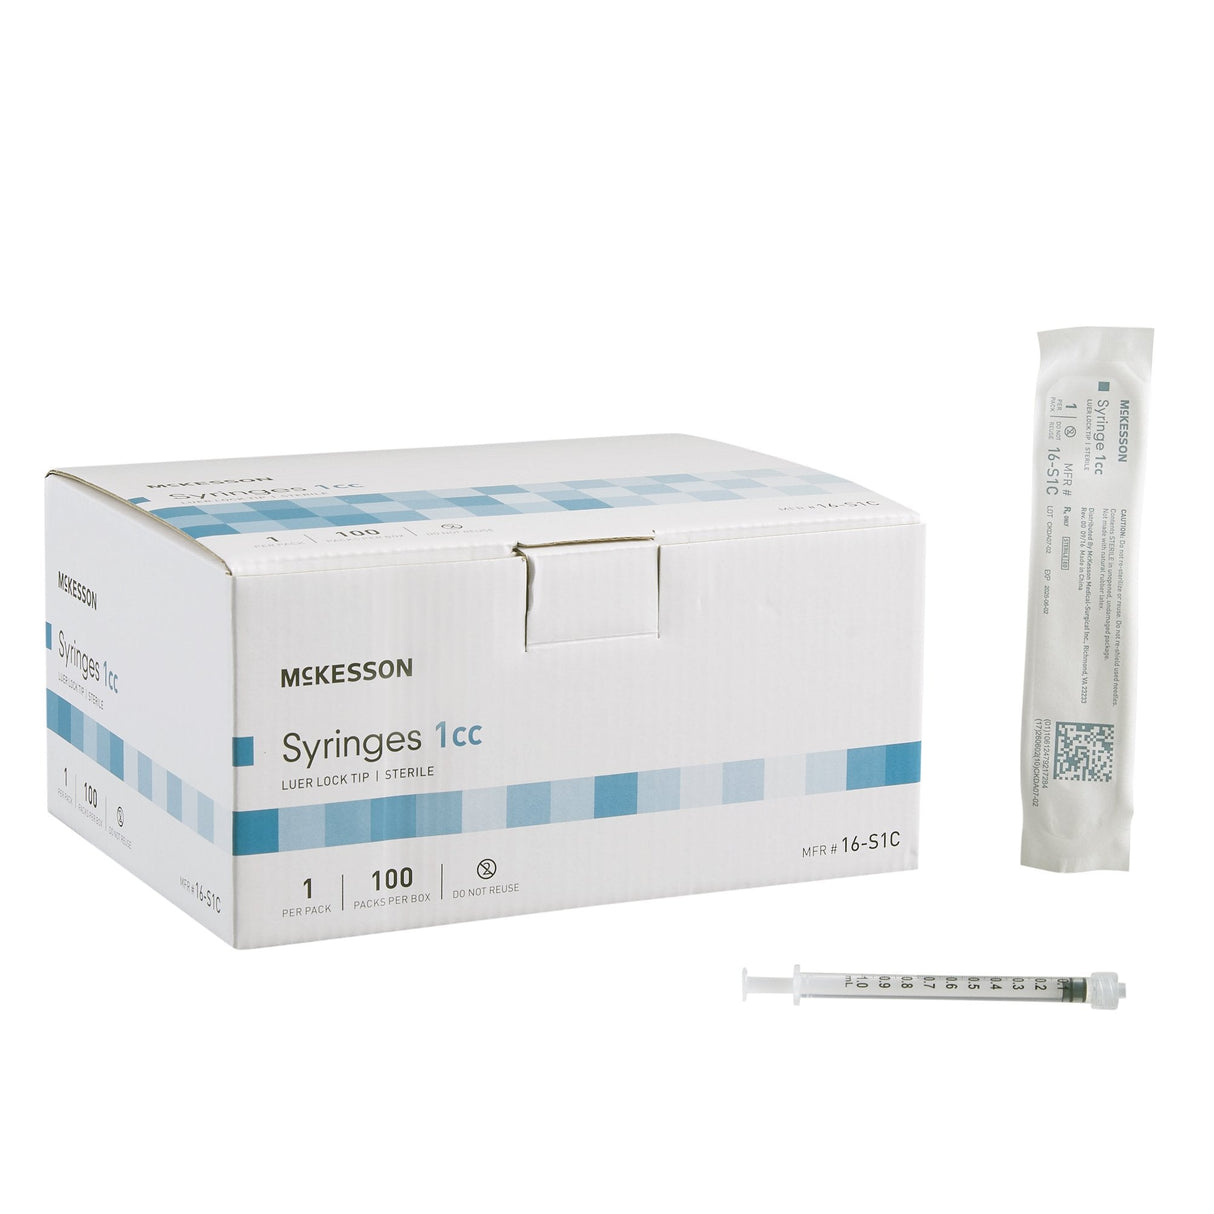 McKesson Luer Lock Syringe 1cc Sterile - 16-S1C